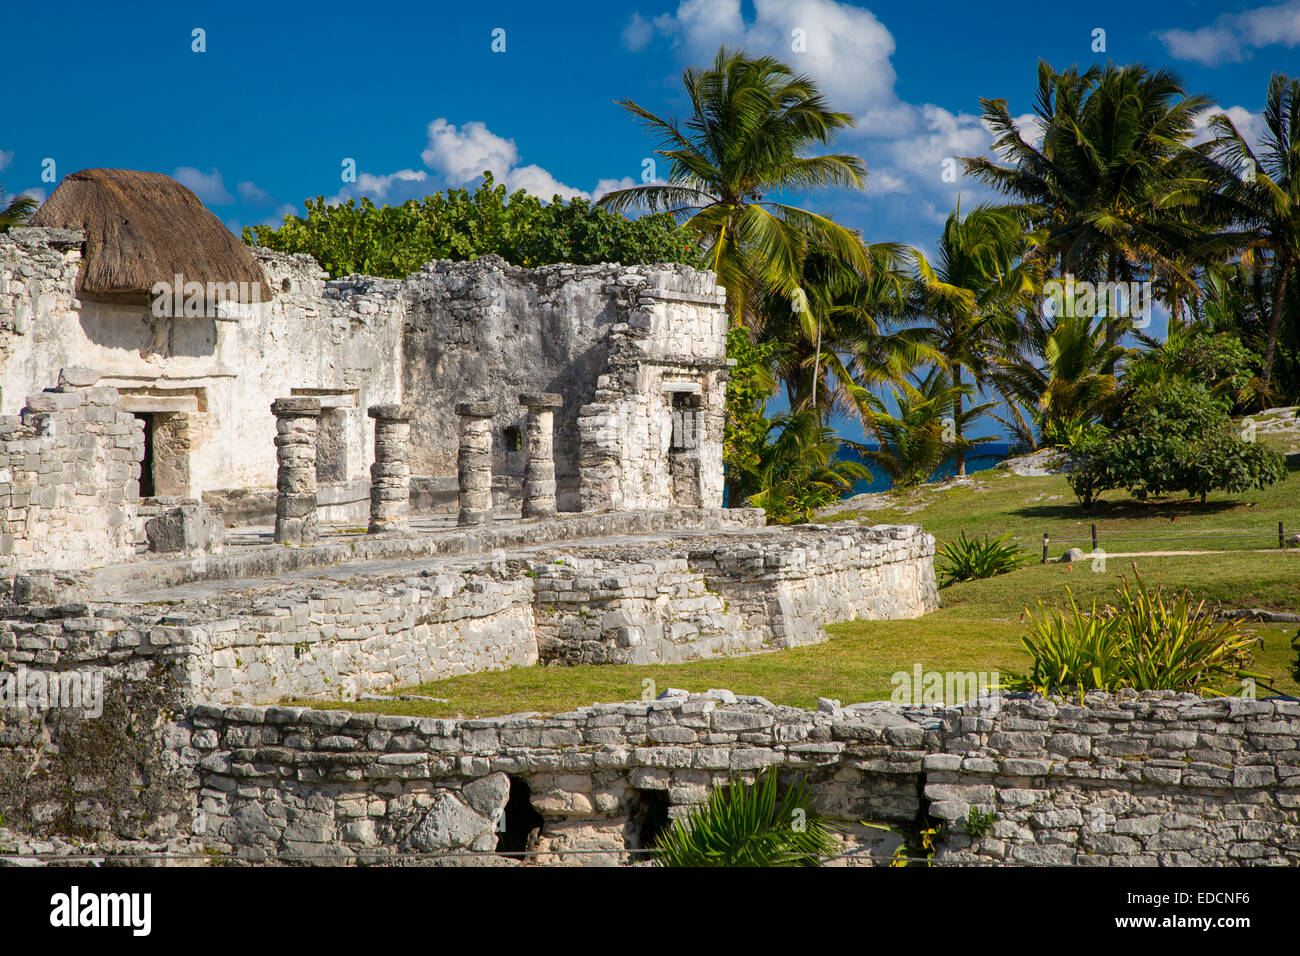 Ruines du temple maya à Tulum, Yucatan, Mexique Banque D'Images